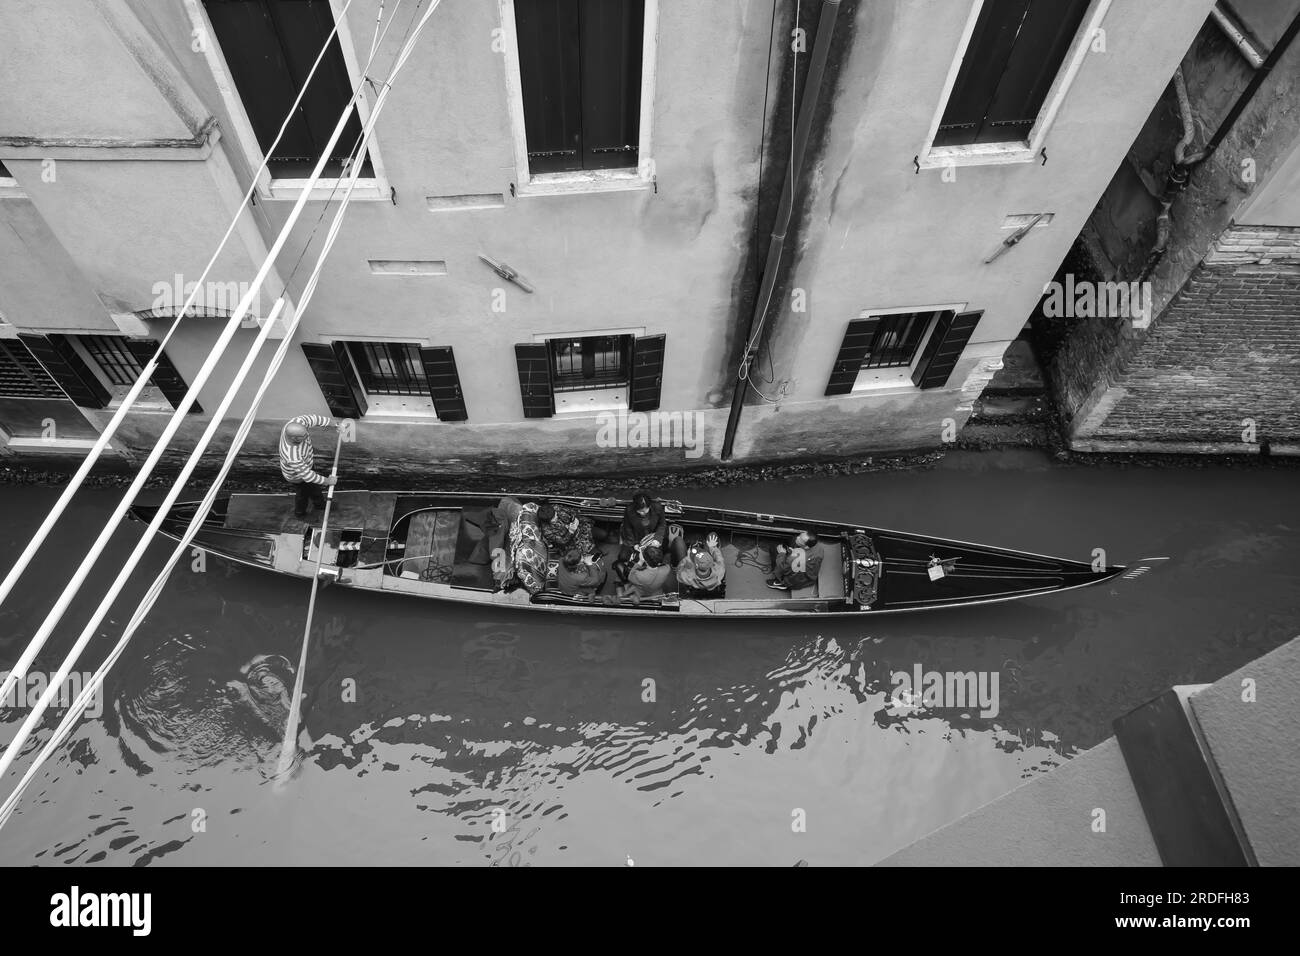 Venise, Italie - 27 avril 2019 : vue d'une gondole dans une petite chanel à Venise Italie vue d'en haut en noir et blanc Banque D'Images